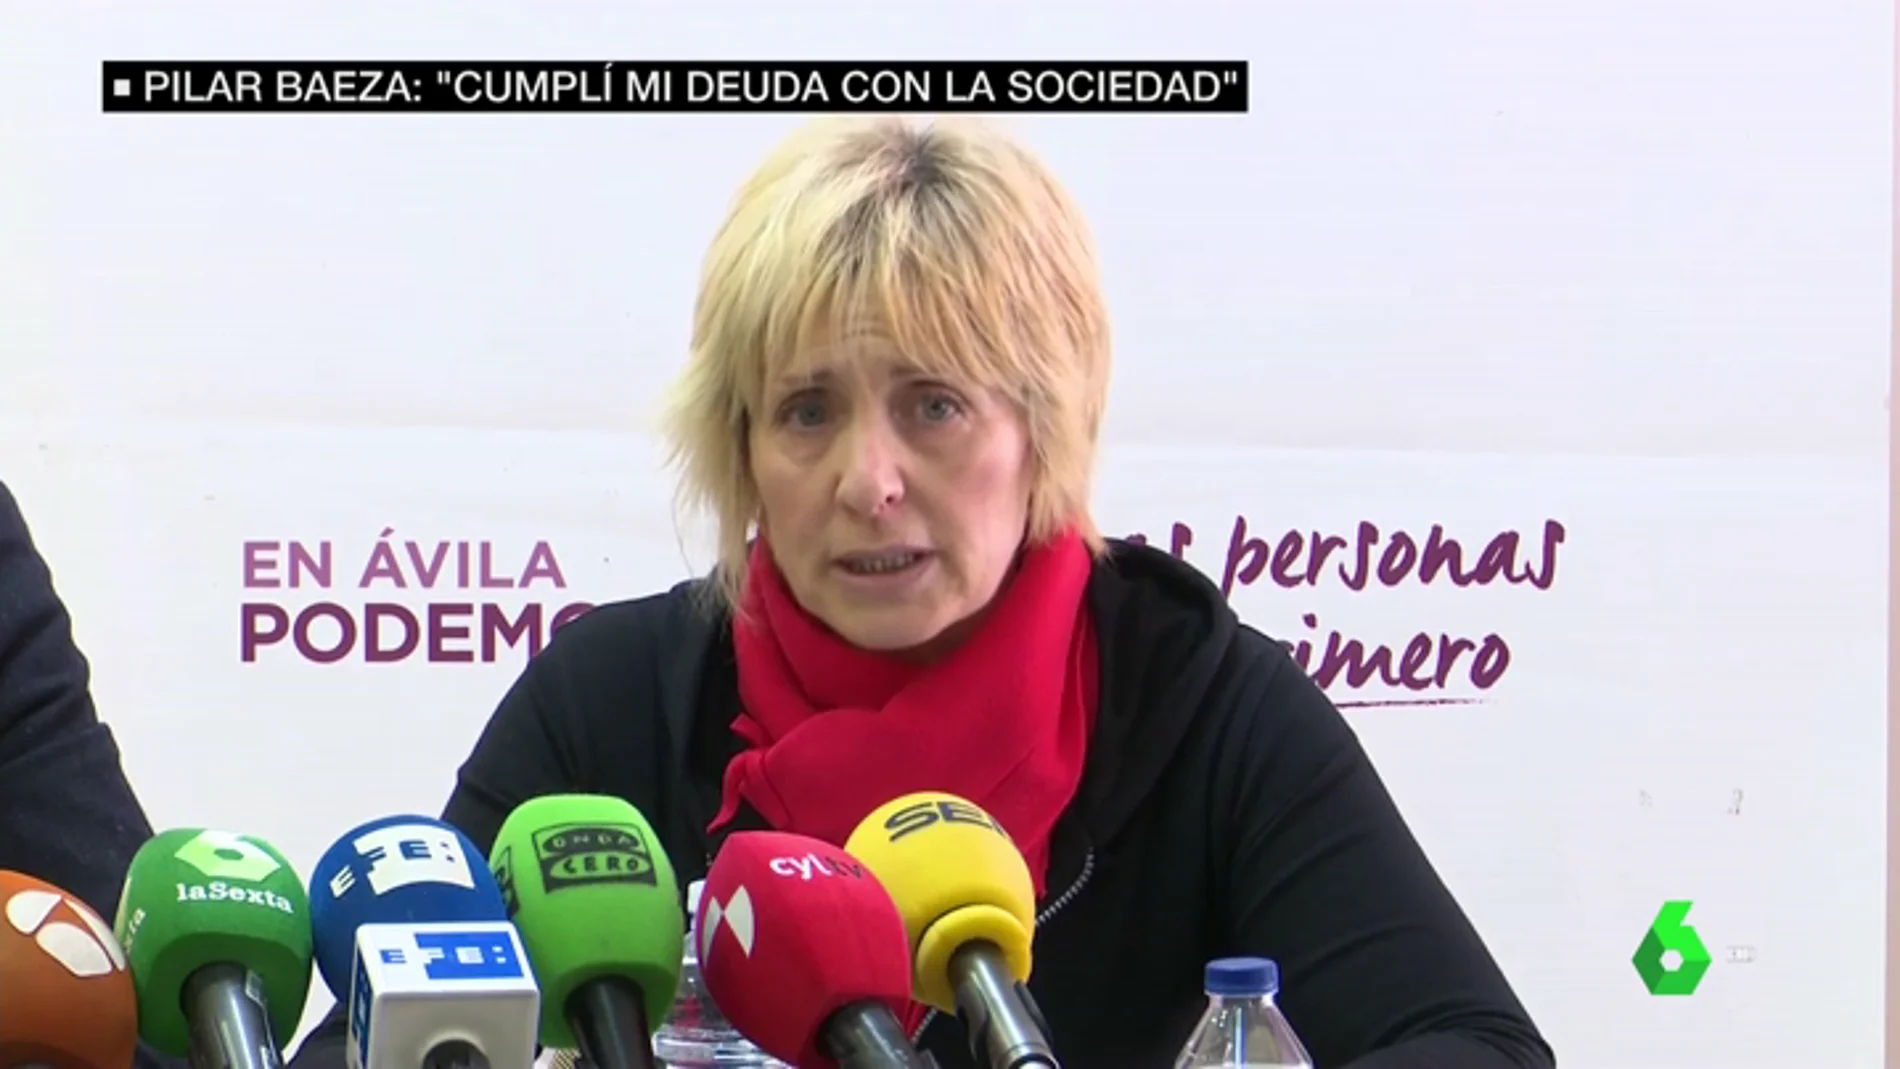 VIDEO REEMPLAZO | Habla Pilar Baeza, candidata de Podemos condenada como cómplice de asesinato: "No acepto chantajes ni me vendo"